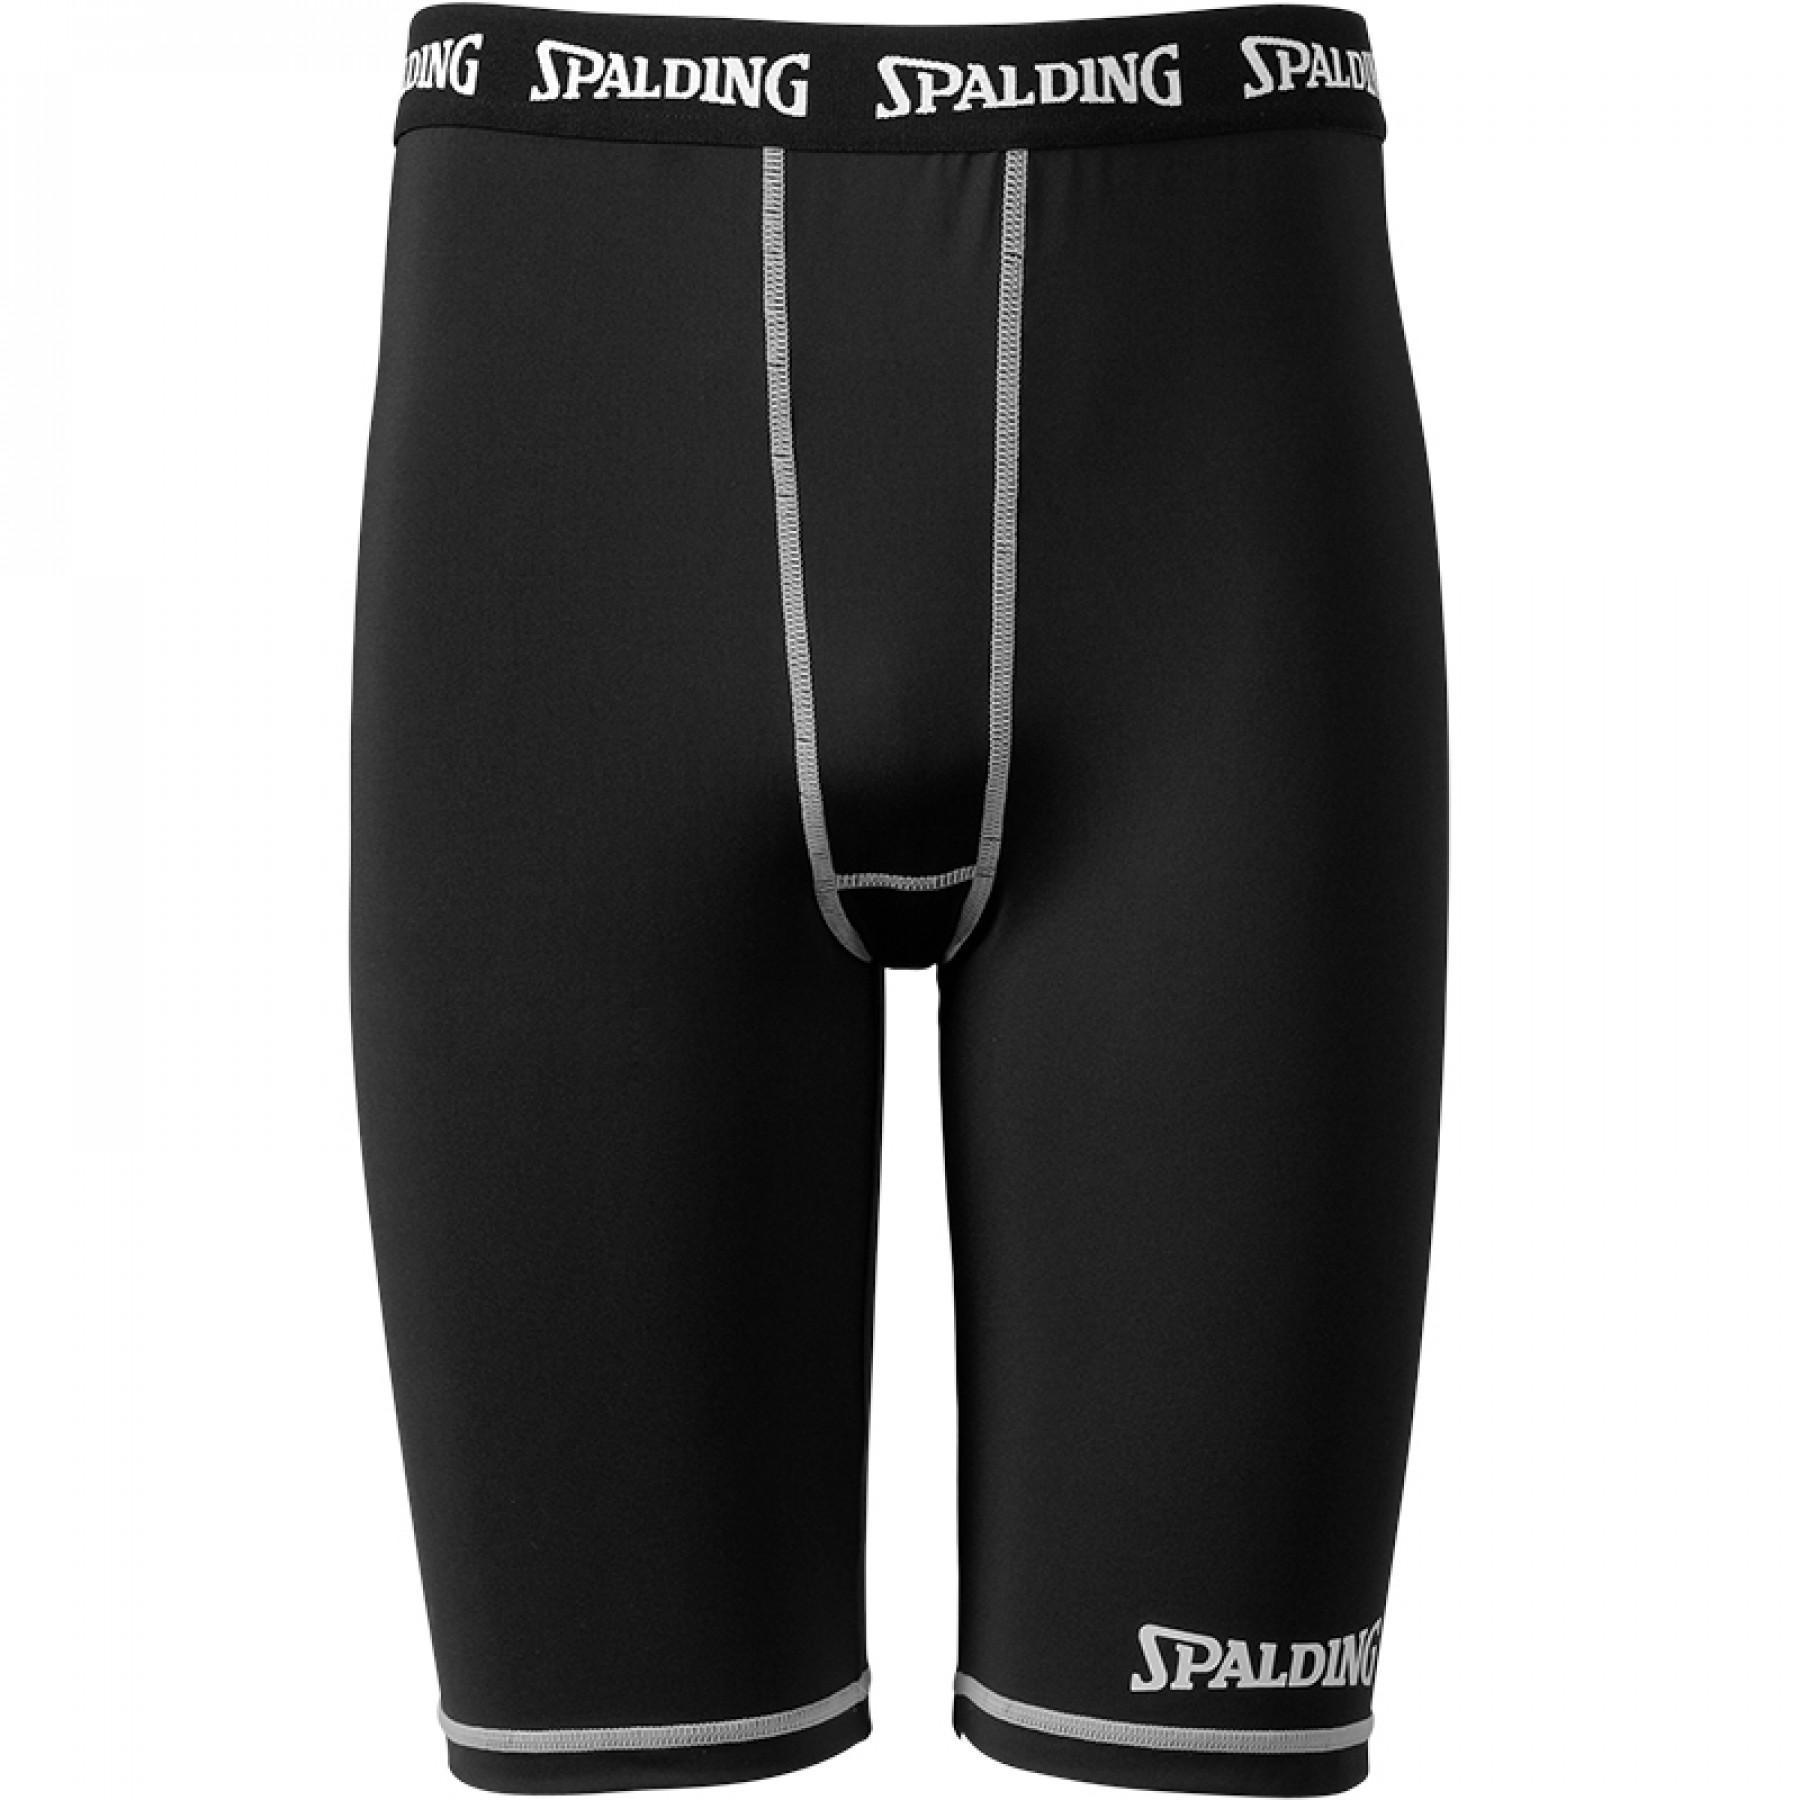 Compressie shorts Spalding